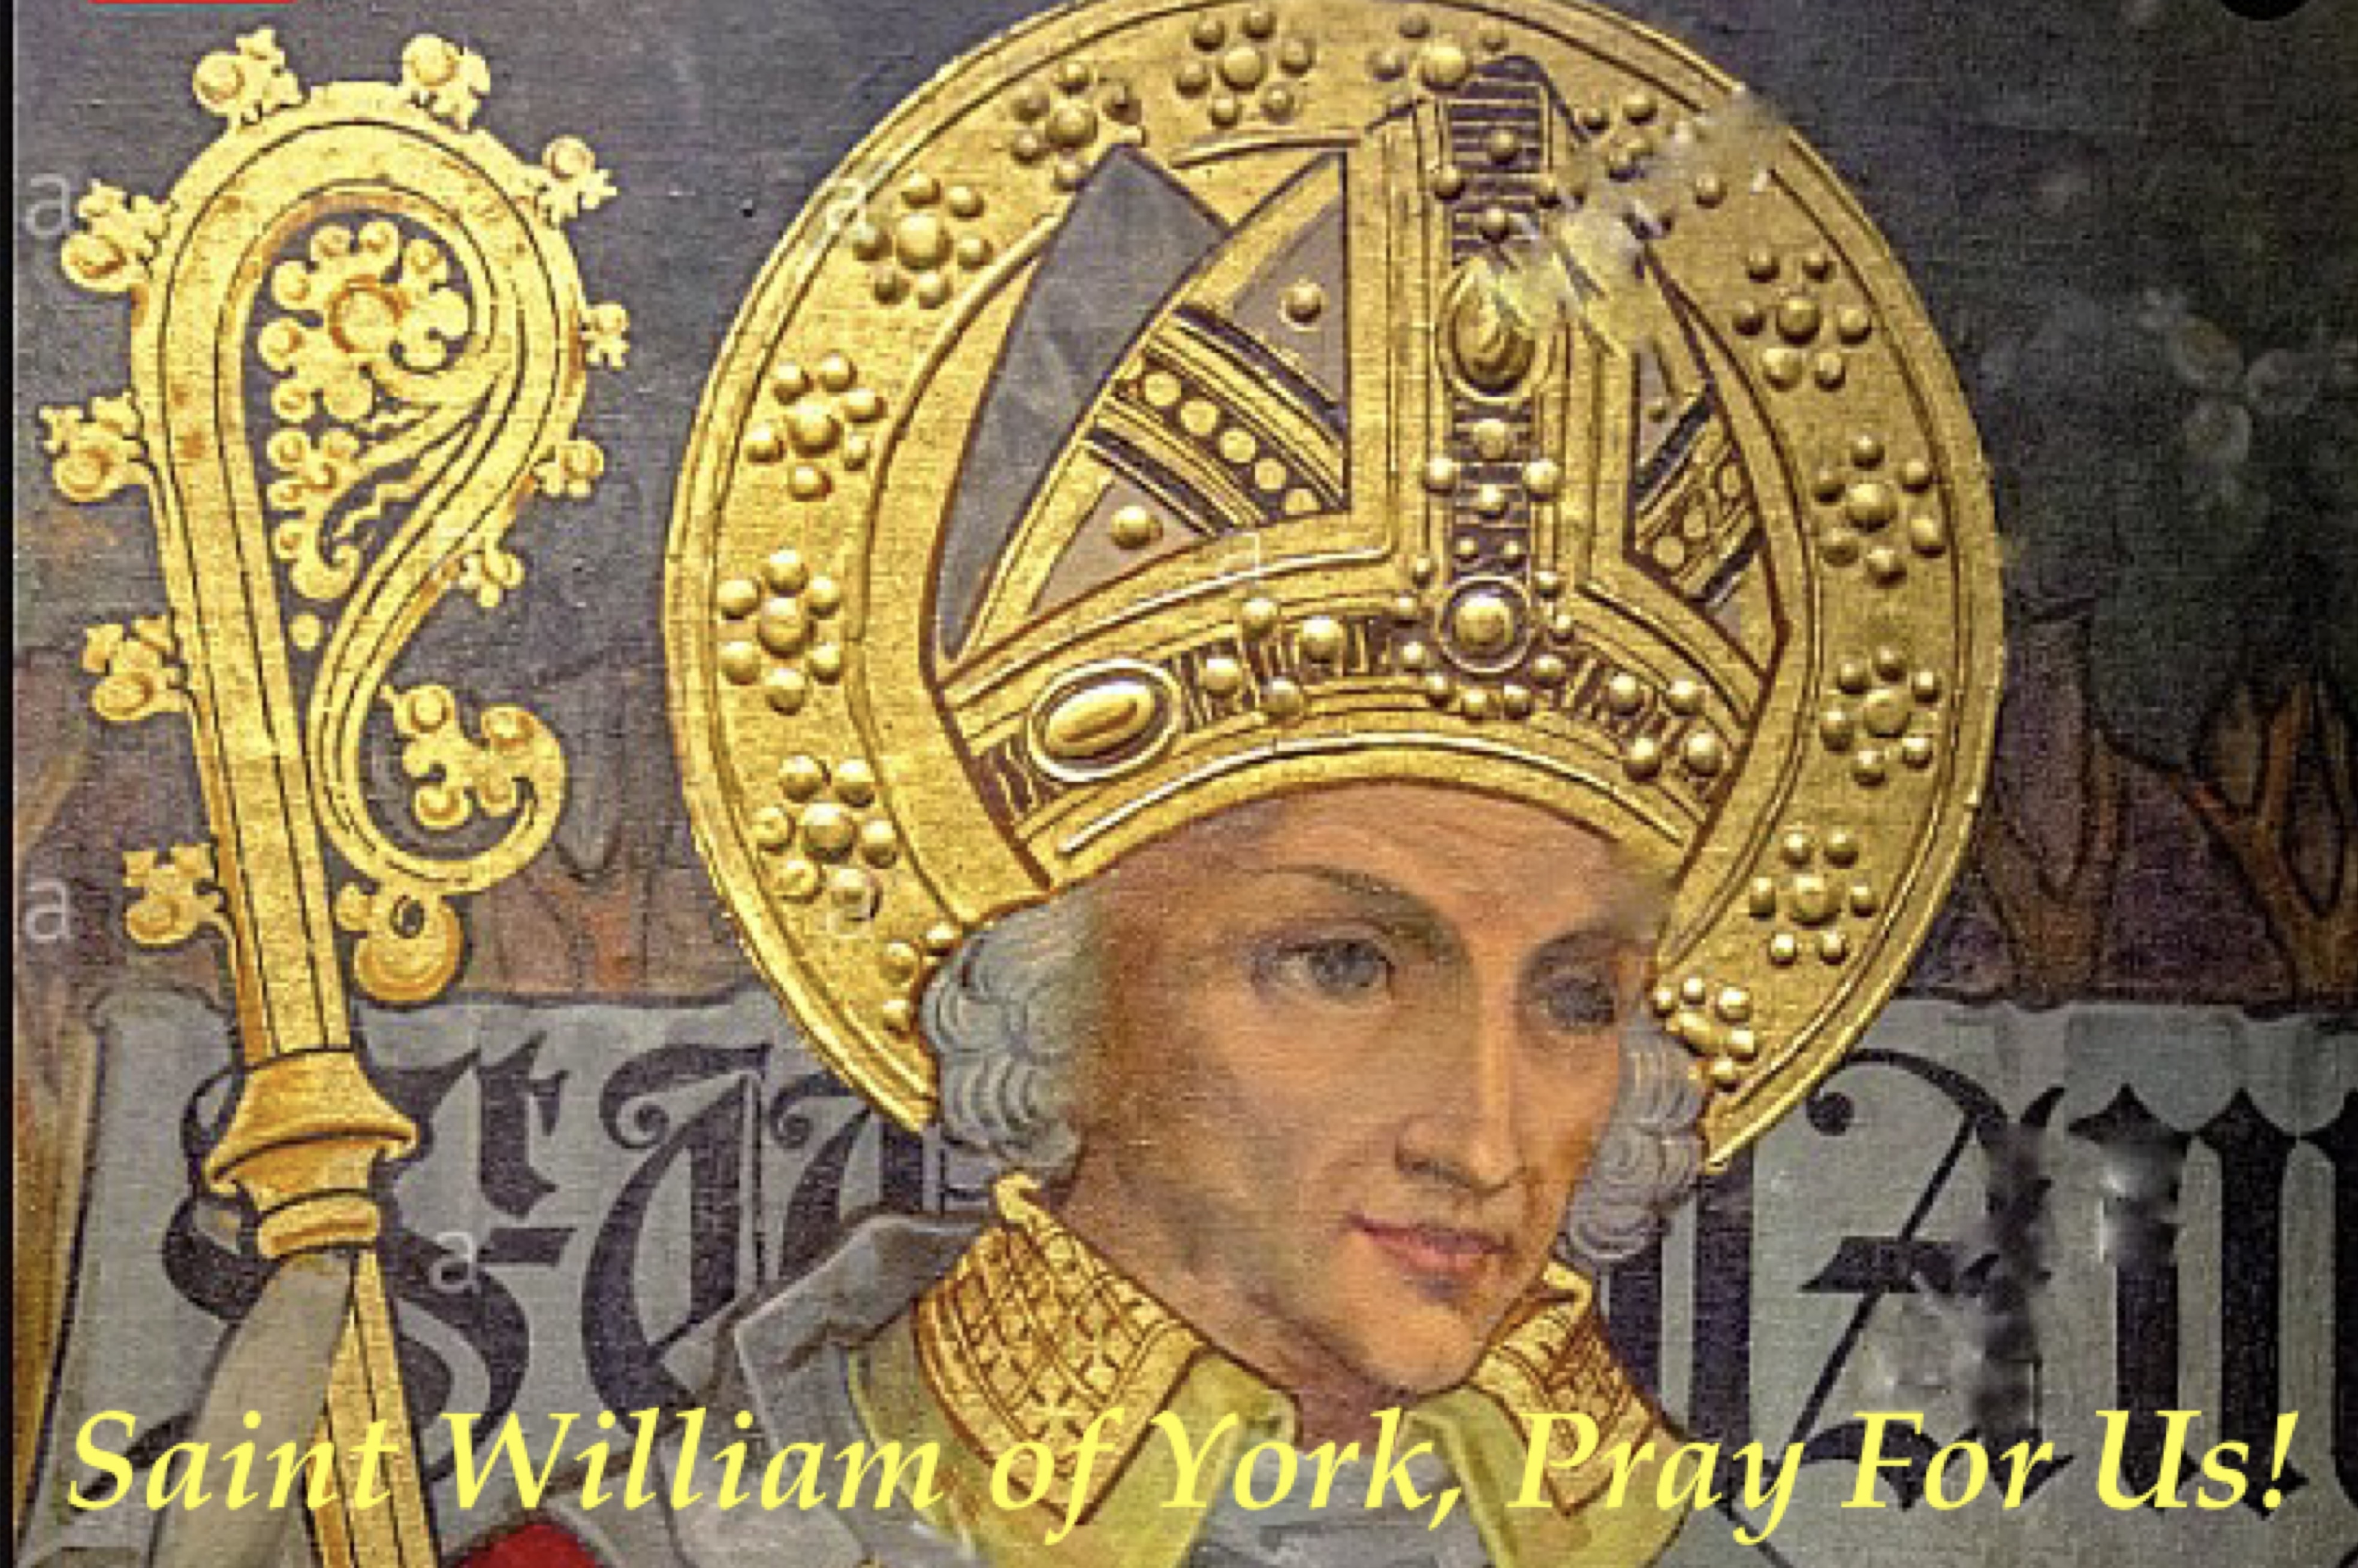 8th June - Saint William of York